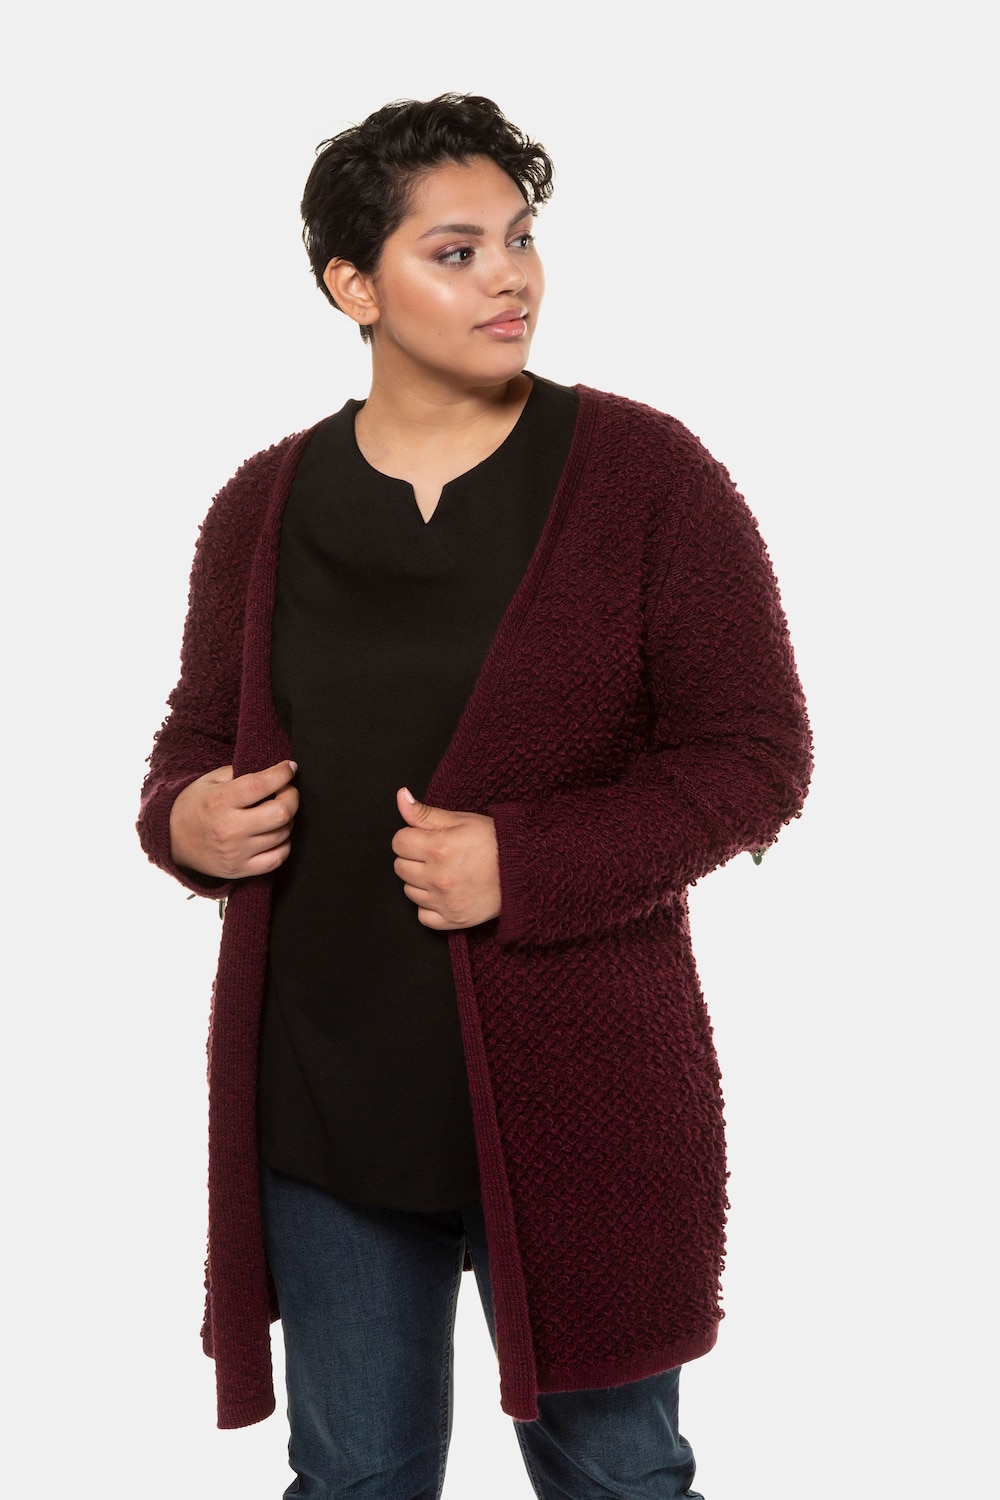 Plus Size Boucle Knit Open Front Cardigan Sweater, Woman, purple, size: 16/18, synthetic fibers/wool, Ulla Popken